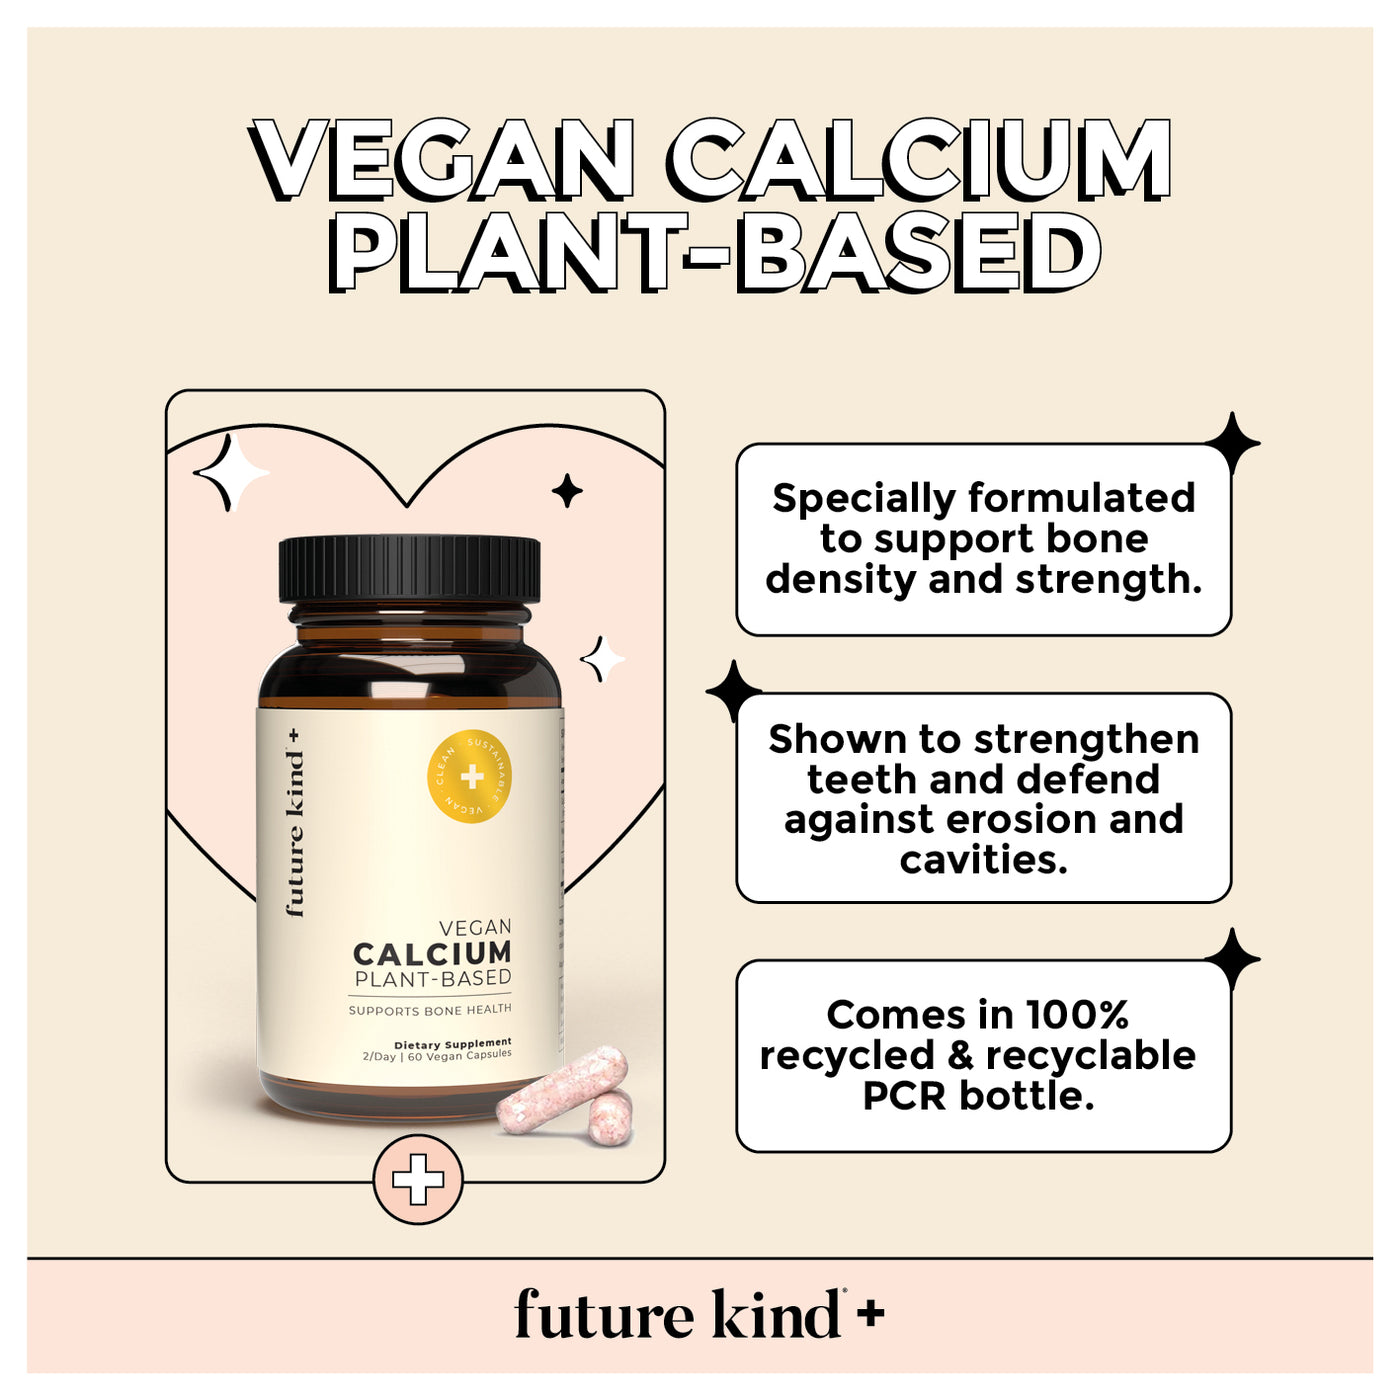 Future Kind Vegan Calcium Supplement Benefits